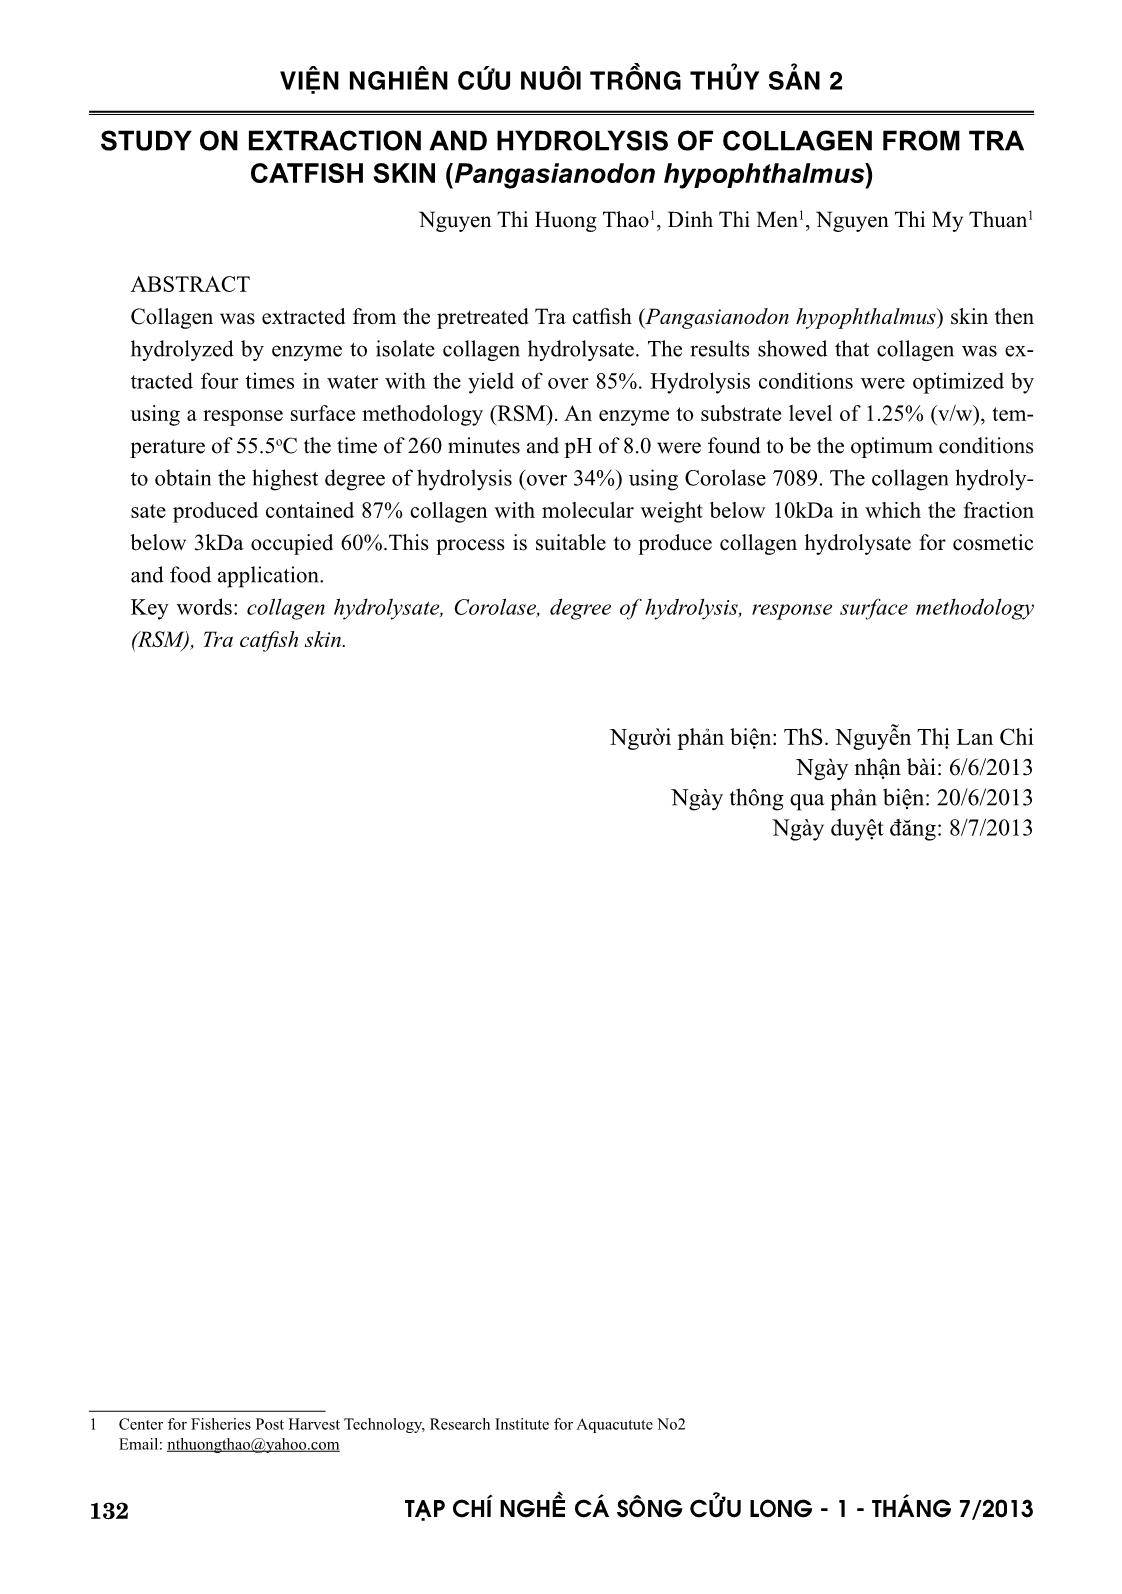 Nghiên cứu tách chiết và thủy phân collagen từ da cá tra (pangasianodon hypophthalmus) trang 9